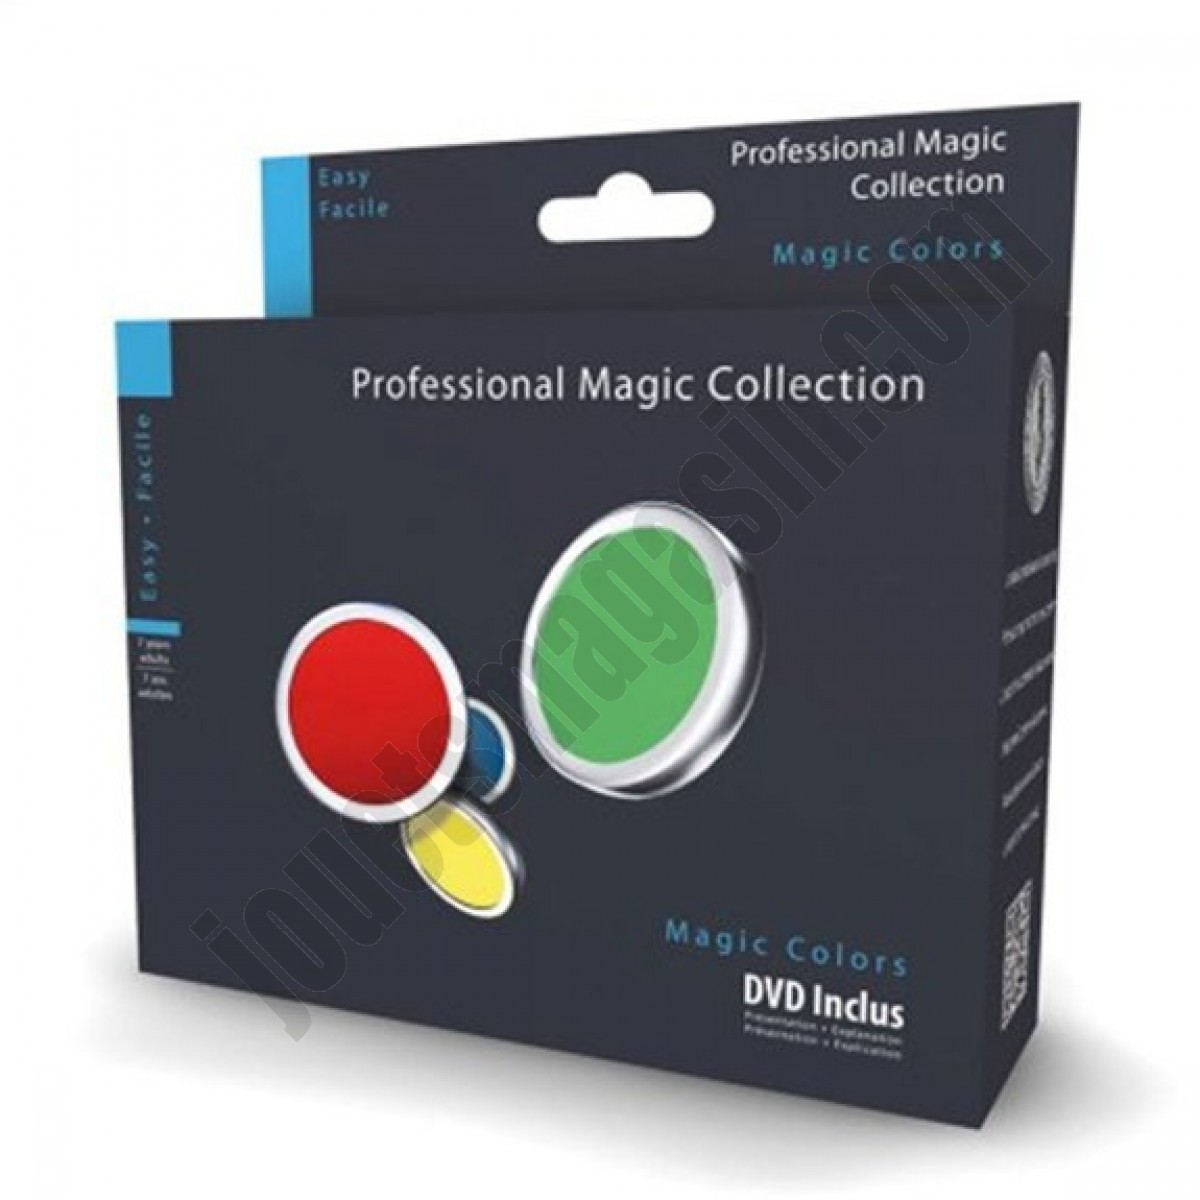 Magic colors avec DVD inclus ◆◆◆ Nouveau - Magic colors avec DVD inclus ◆◆◆ Nouveau